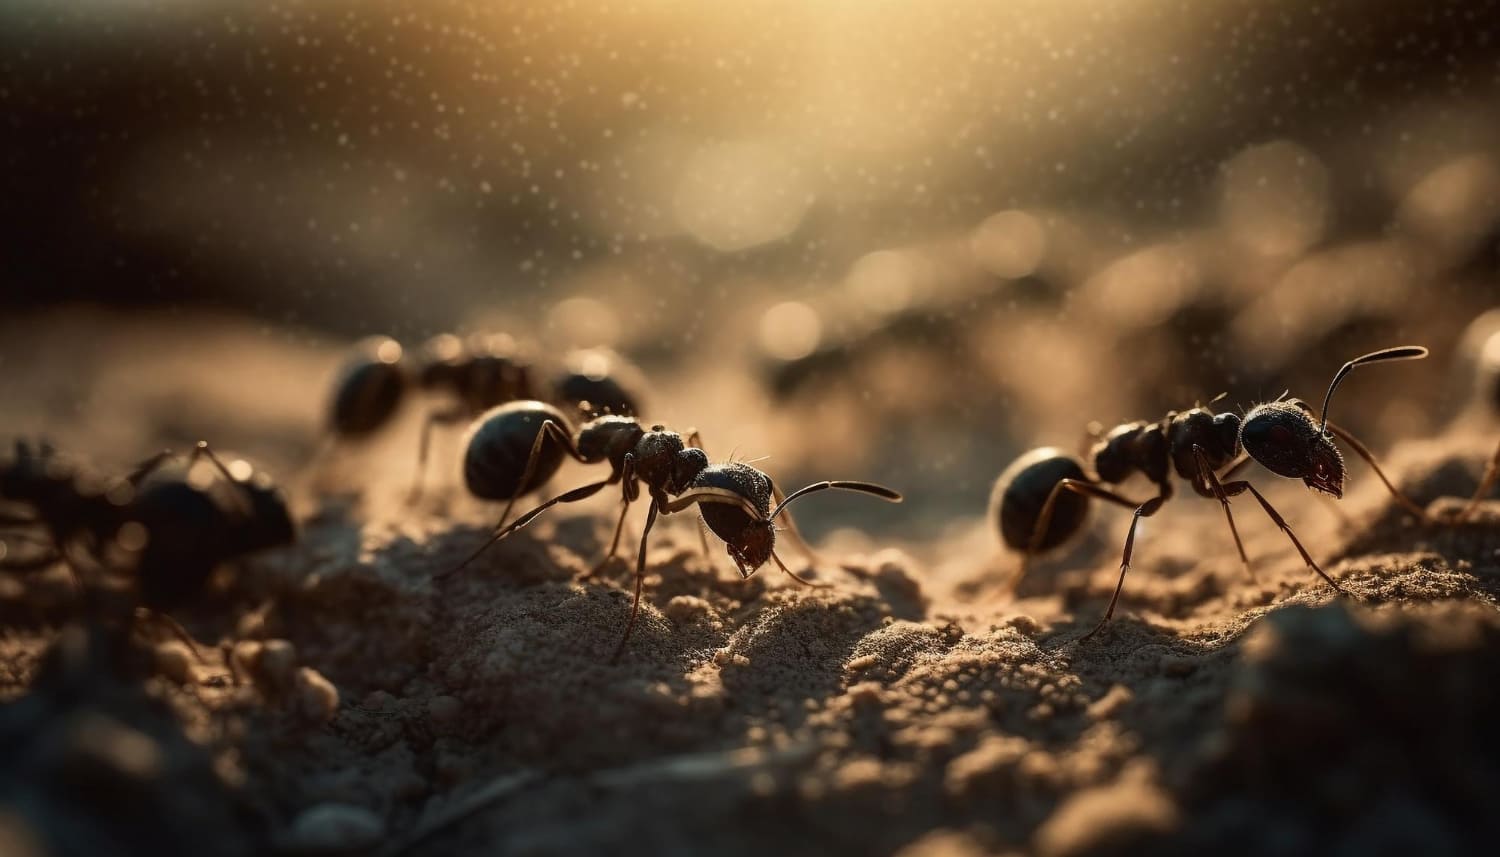 Необычное поведение муравьев наблюдали в Австралии: целая колония притворялась мертвой